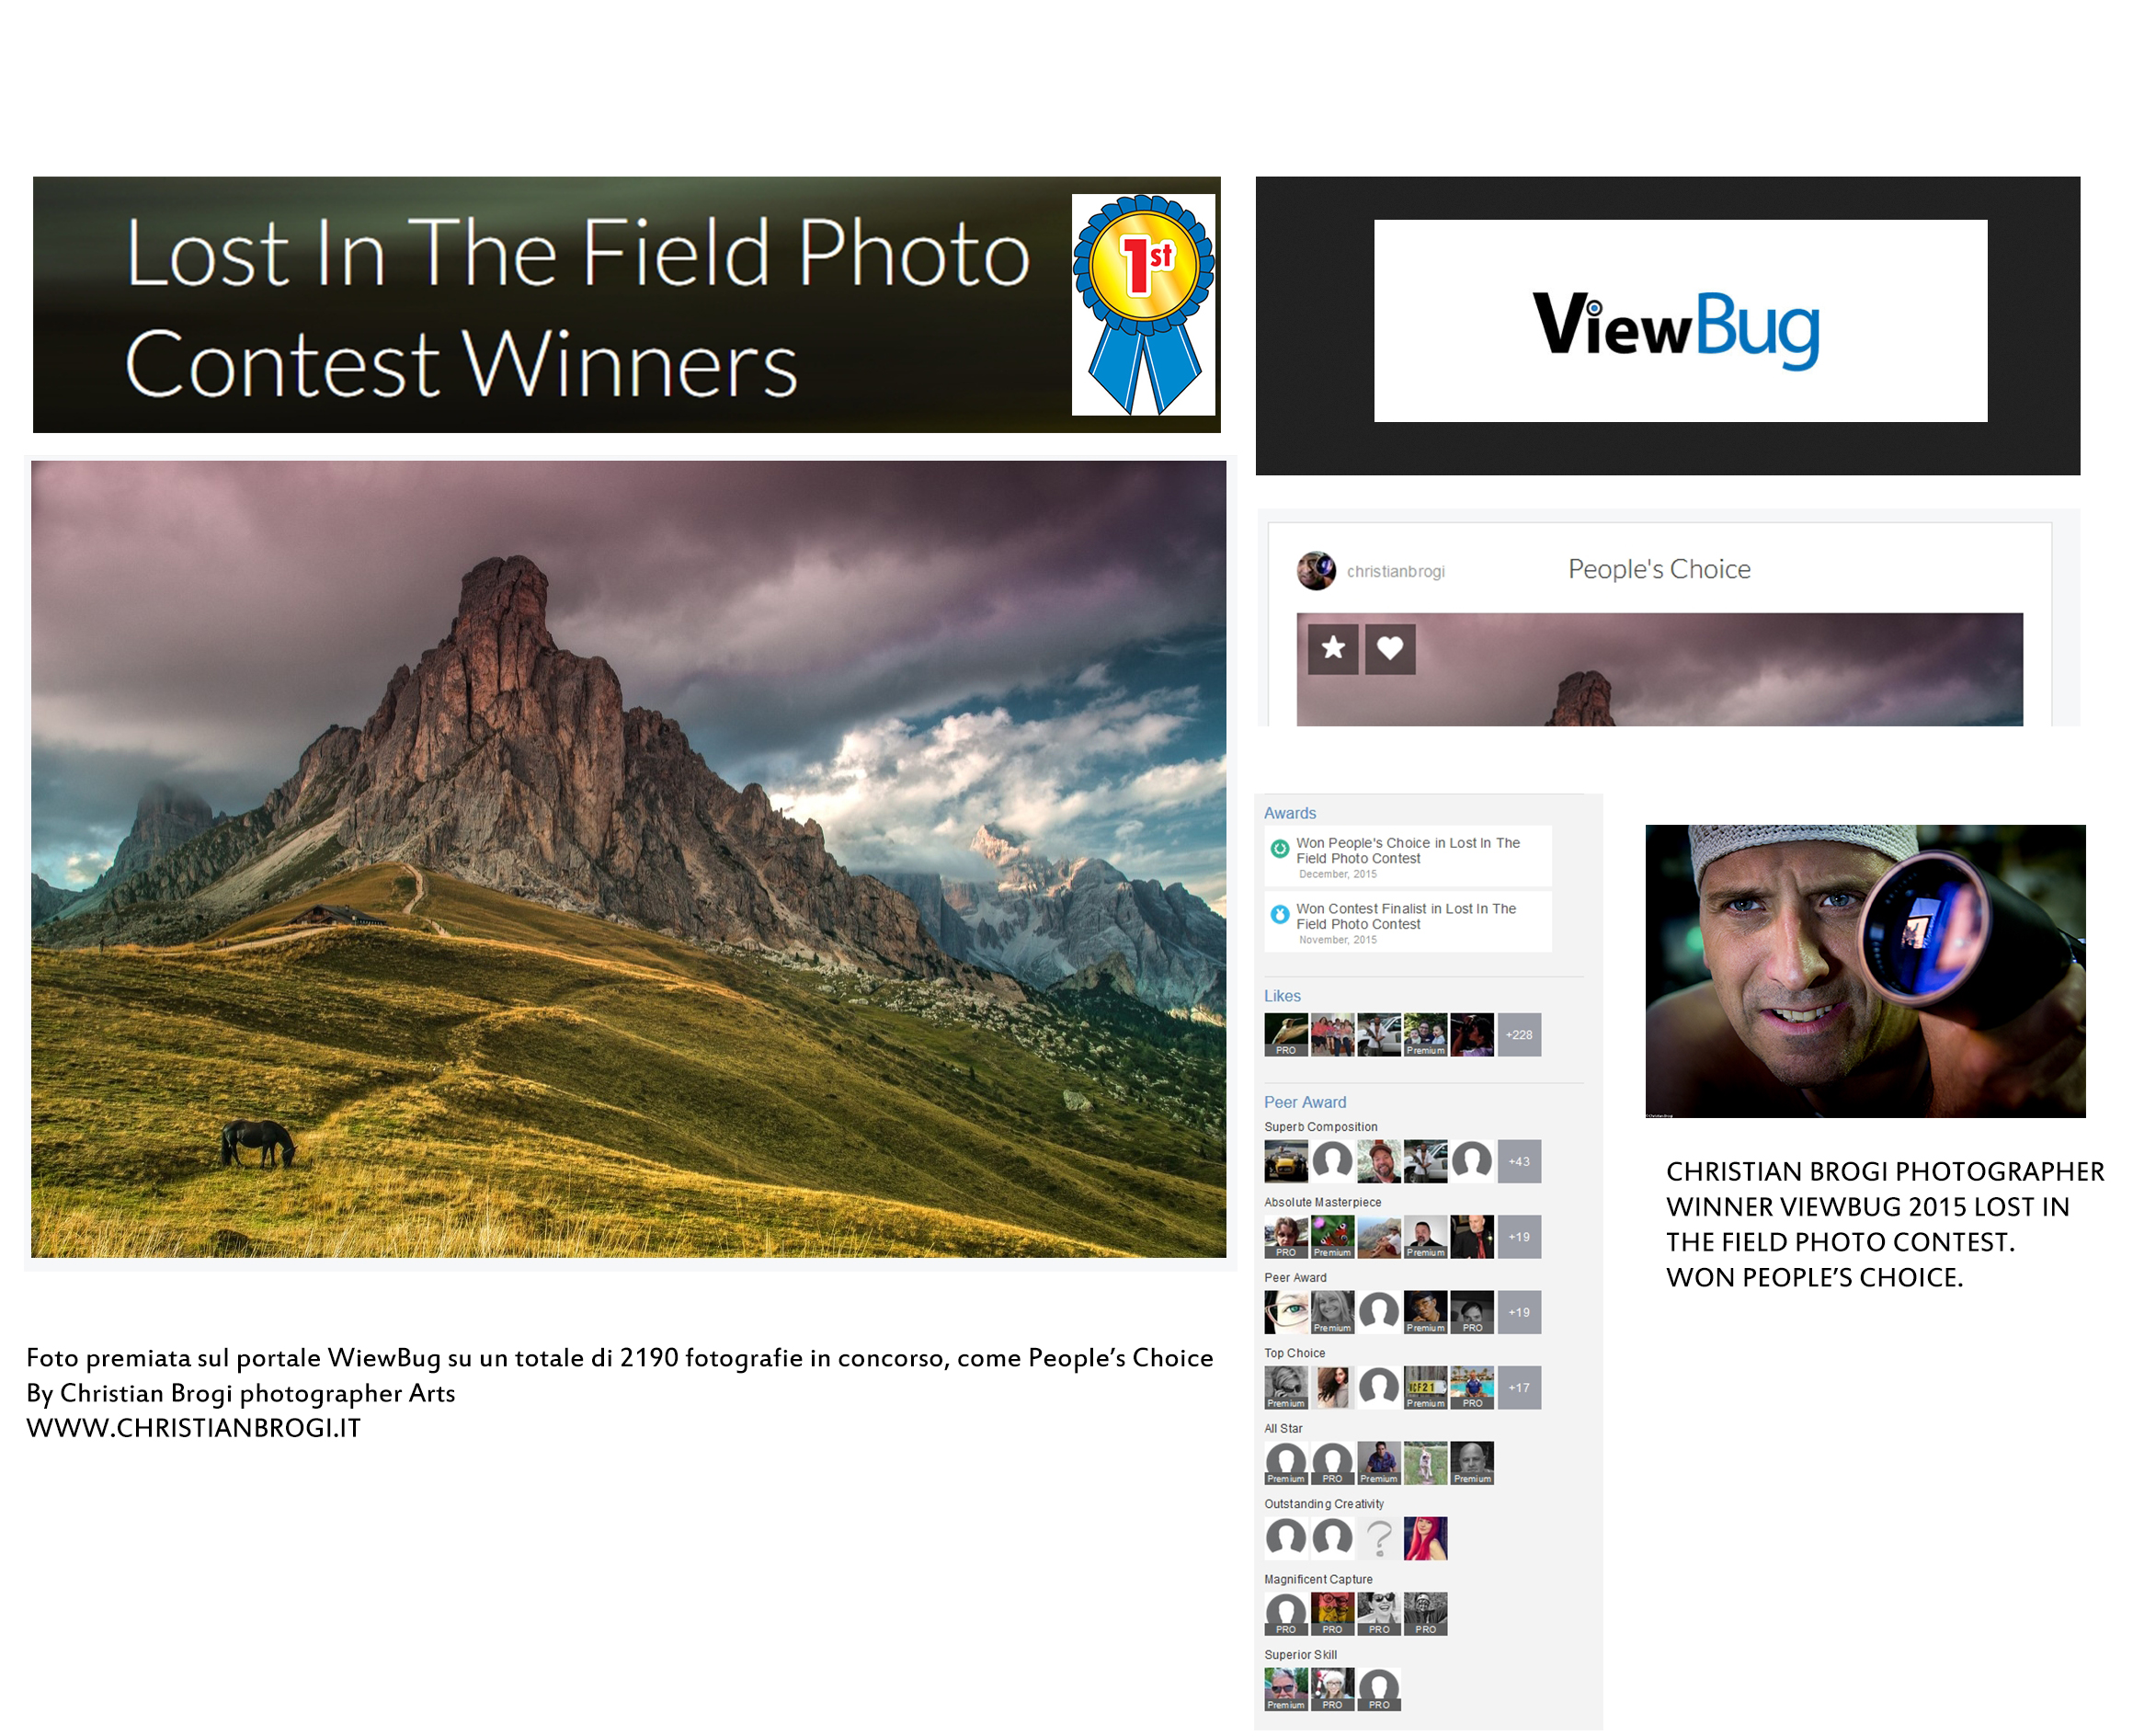 Foto vincitrice su oltre 2000 partecipanti del contest "Lost in the field" 2015